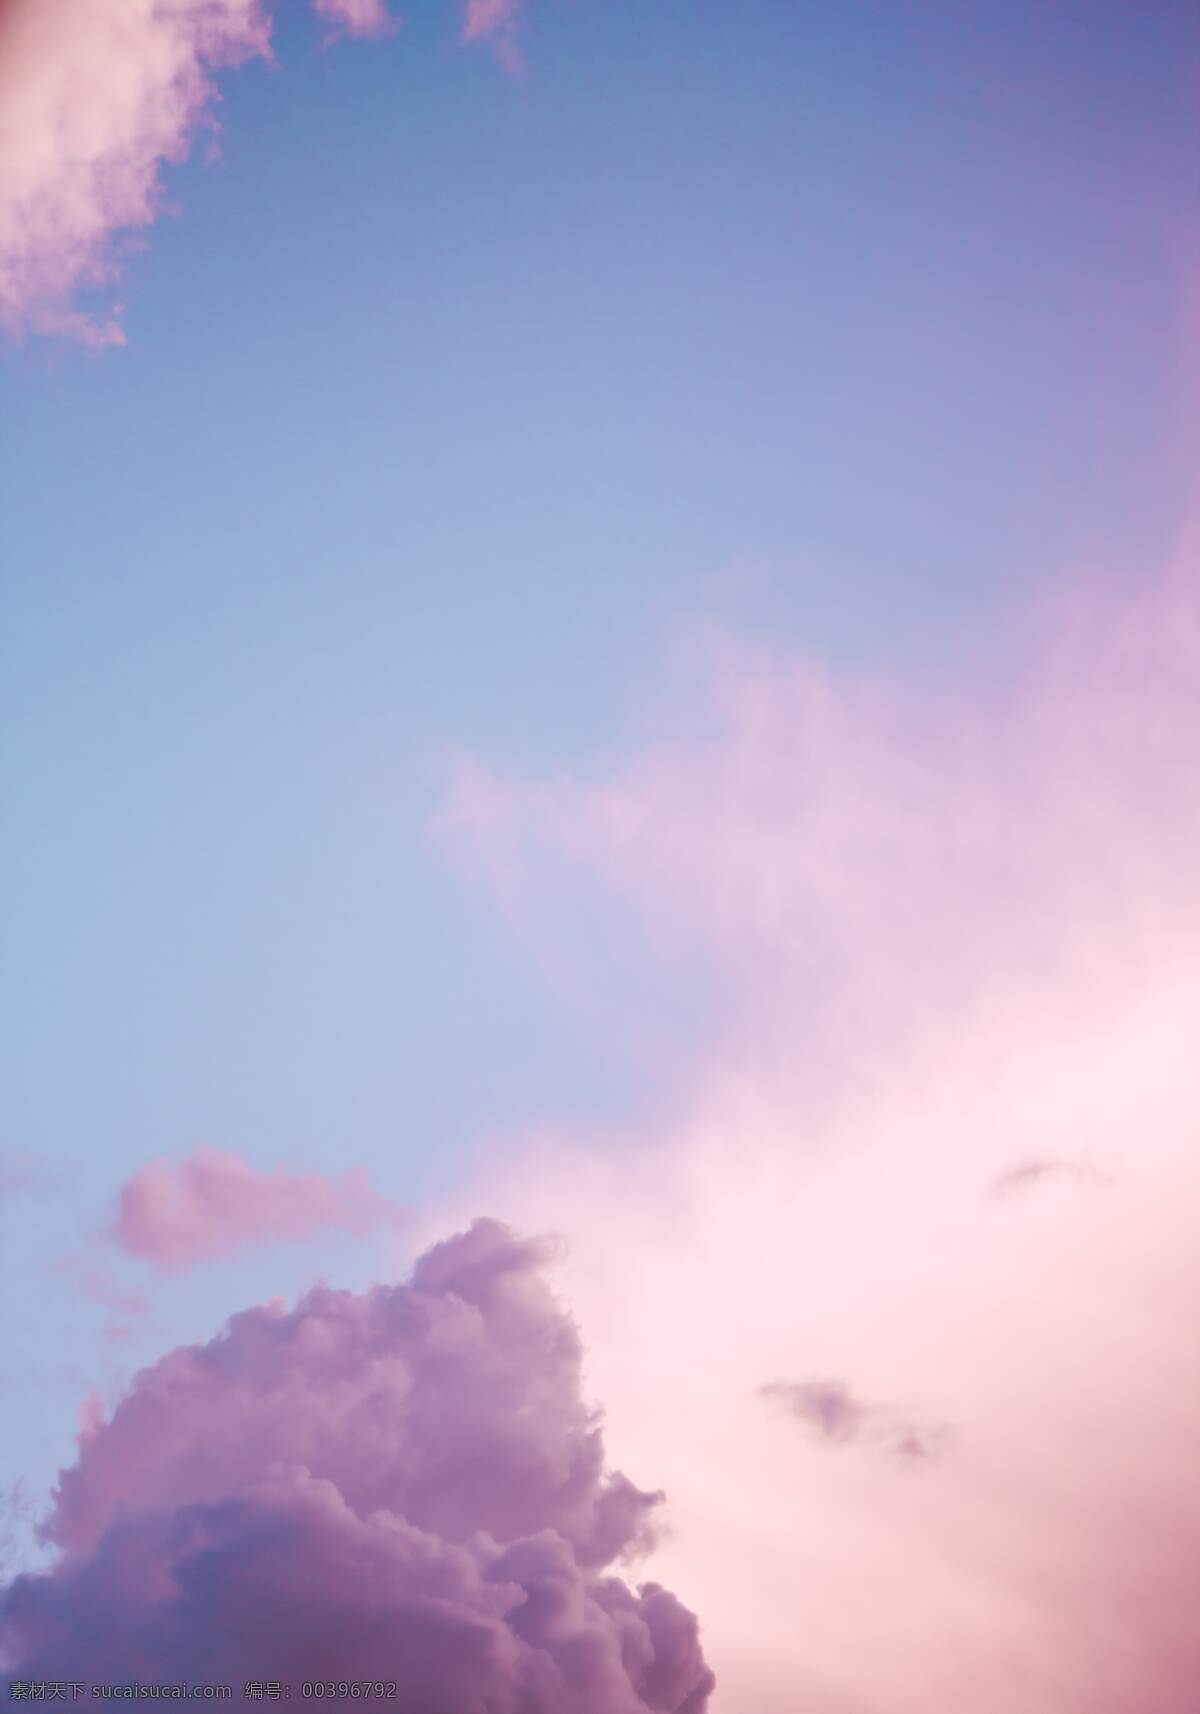 粉色天空 粉色 粉紫色 天空 背景图片 壁纸 高清壁纸 少女心 粉红 可爱 自然景观 自然风景